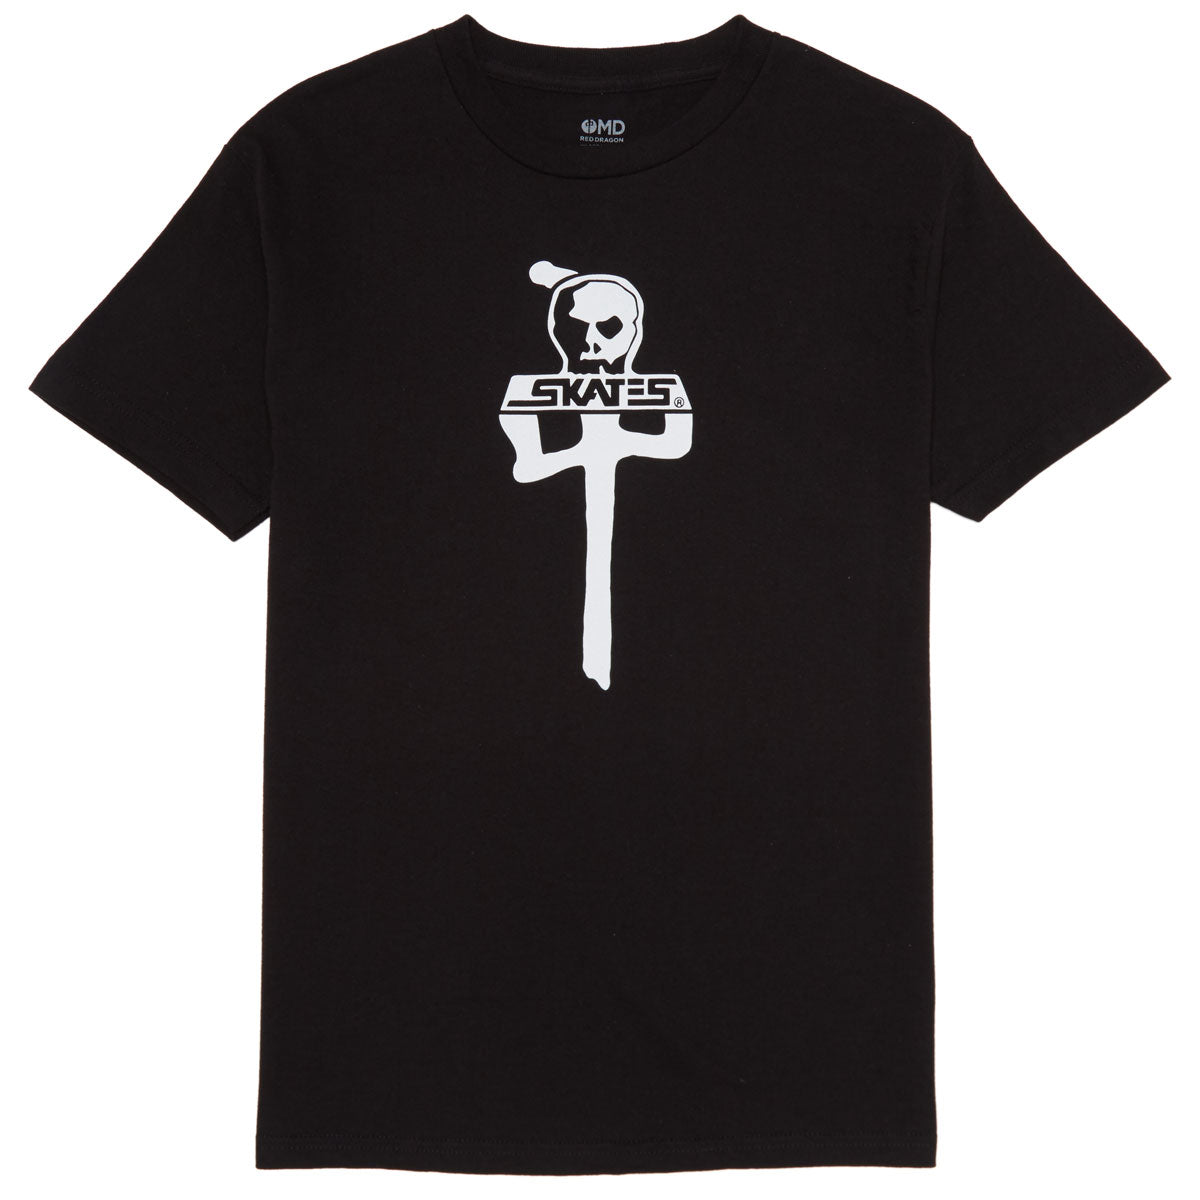 RDS x Skull Skates T-Shirt - Black/White image 1